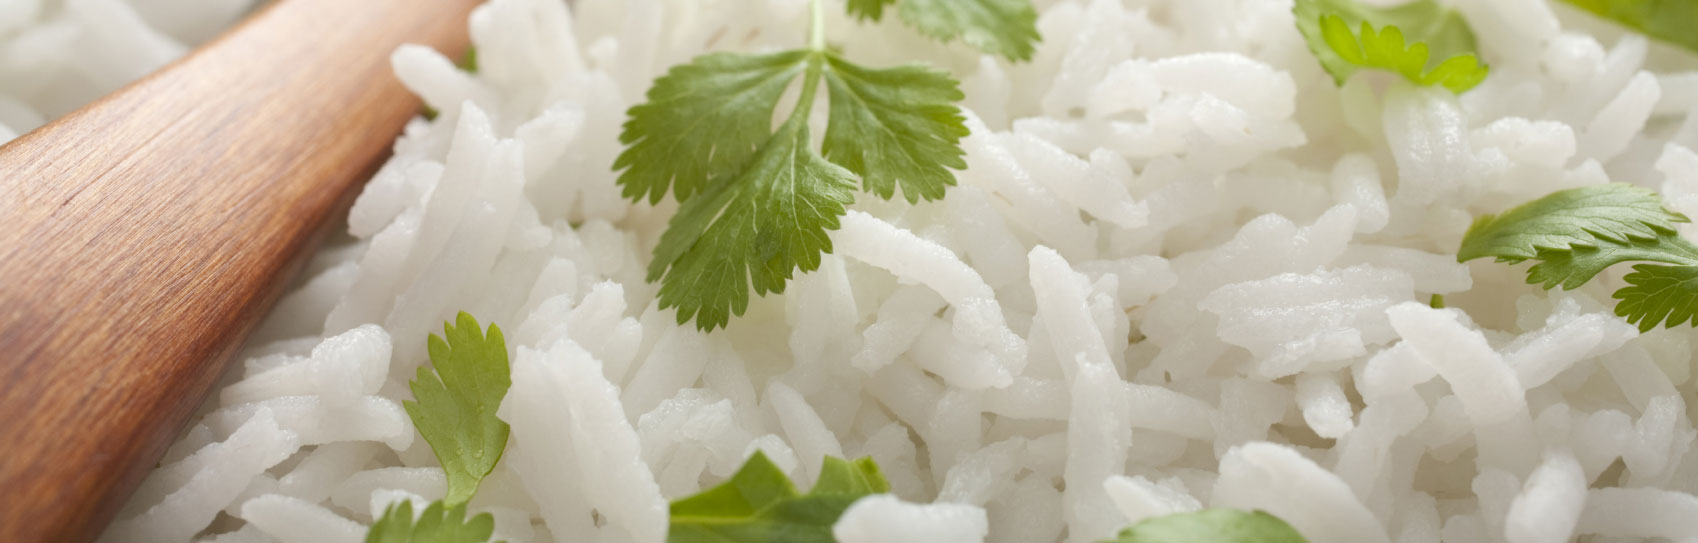 رمز و راز پخت برنج ایرانی خوشمزه و مجلسی